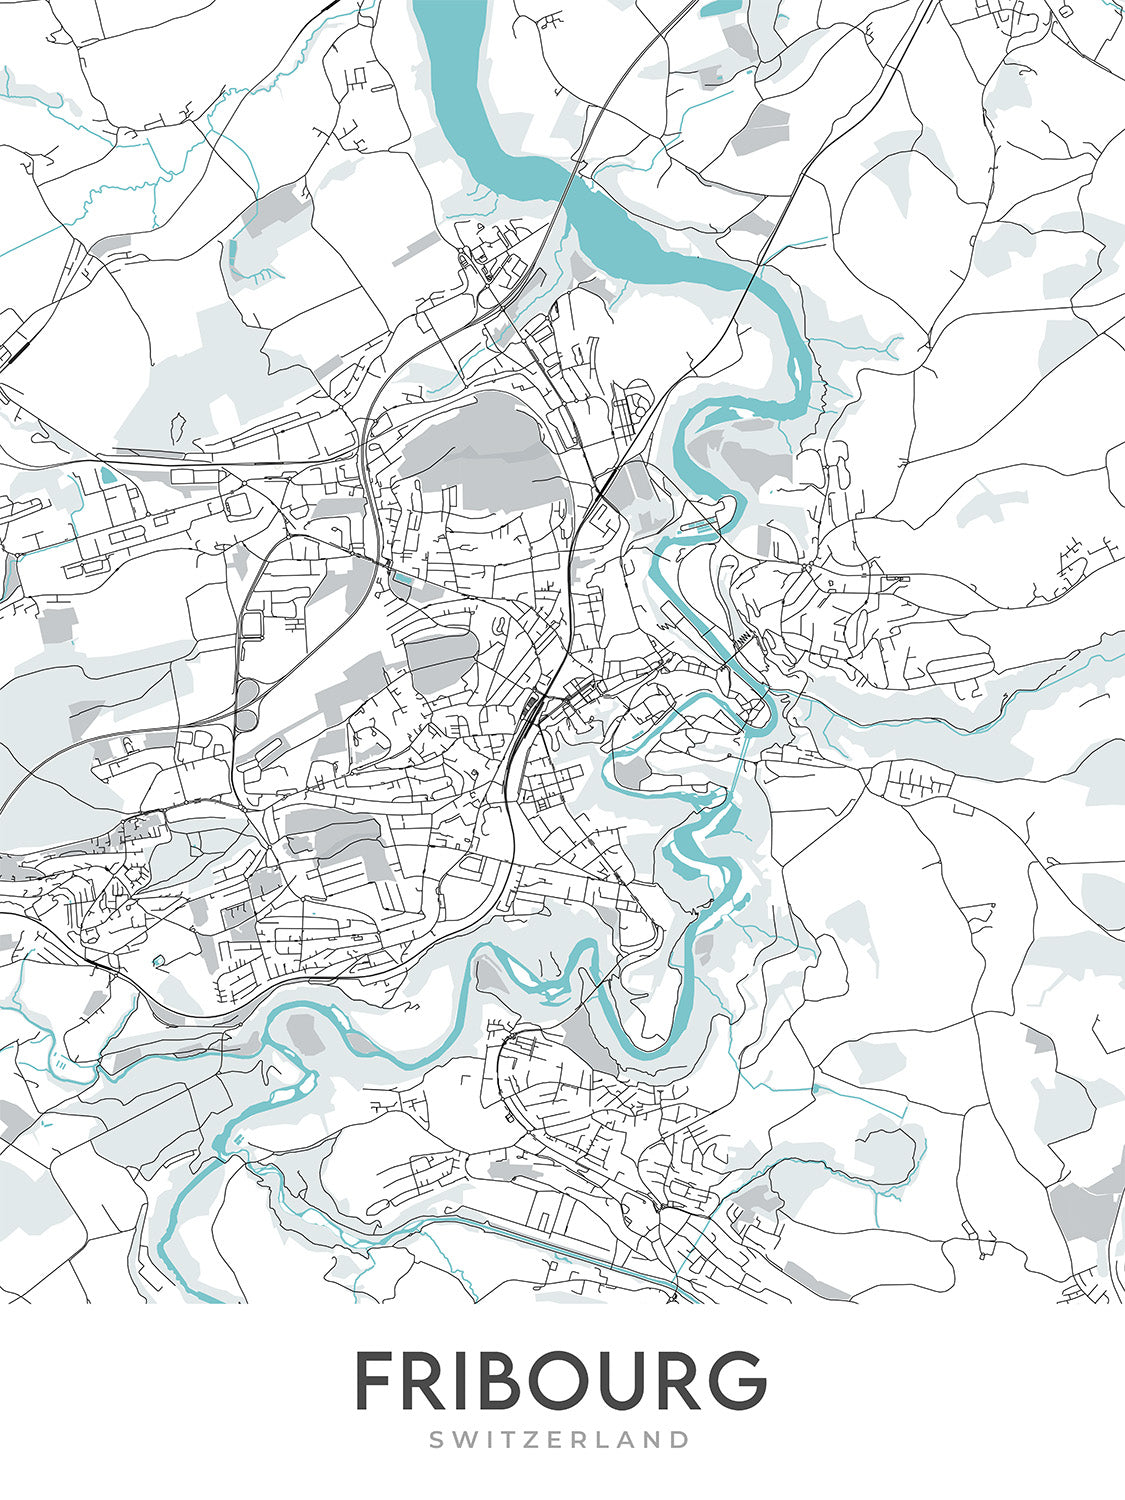 Modern City Map of Fribourg, Switzerland: Altstadt, Cathédrale Saint-Pierre, Jet d'Eau, Palais des Nations, Parc des Eaux-Vives